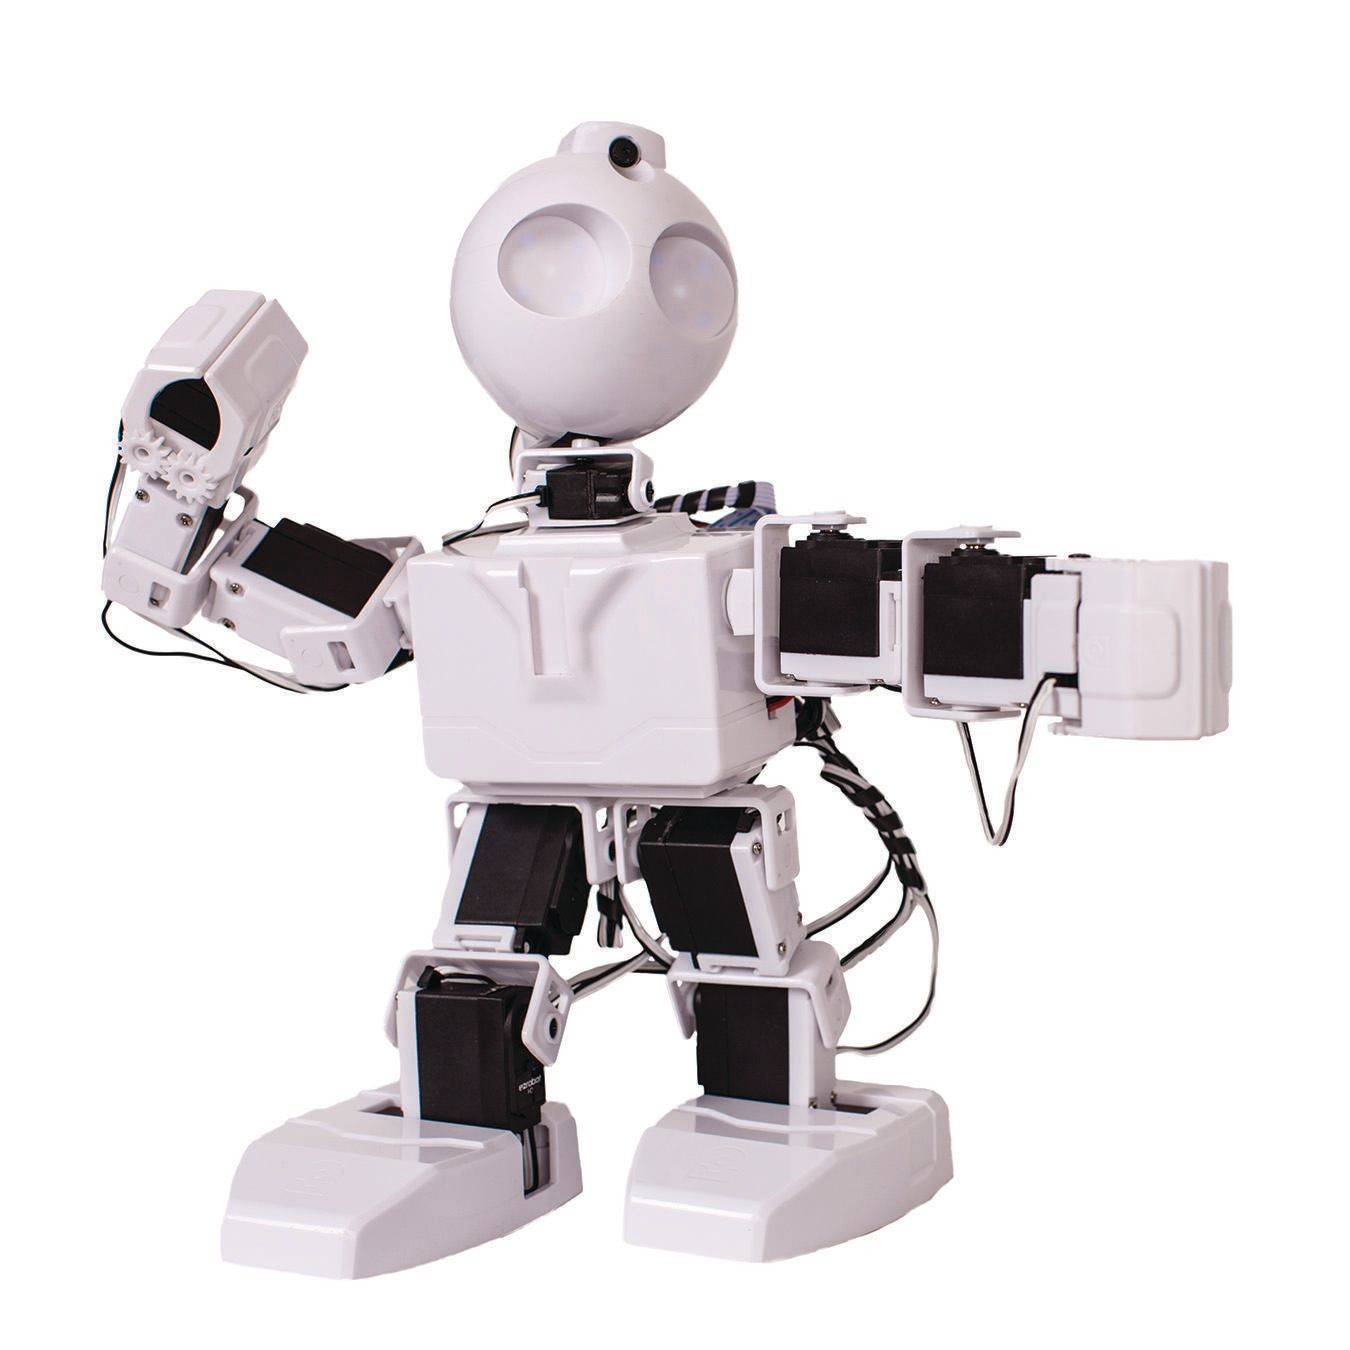 Роботы для обеспечения безопасности. JD-humanoid Robotics Kit. Человекоподобный робот nao 6. Робот ez Robot. Робот гексапод.